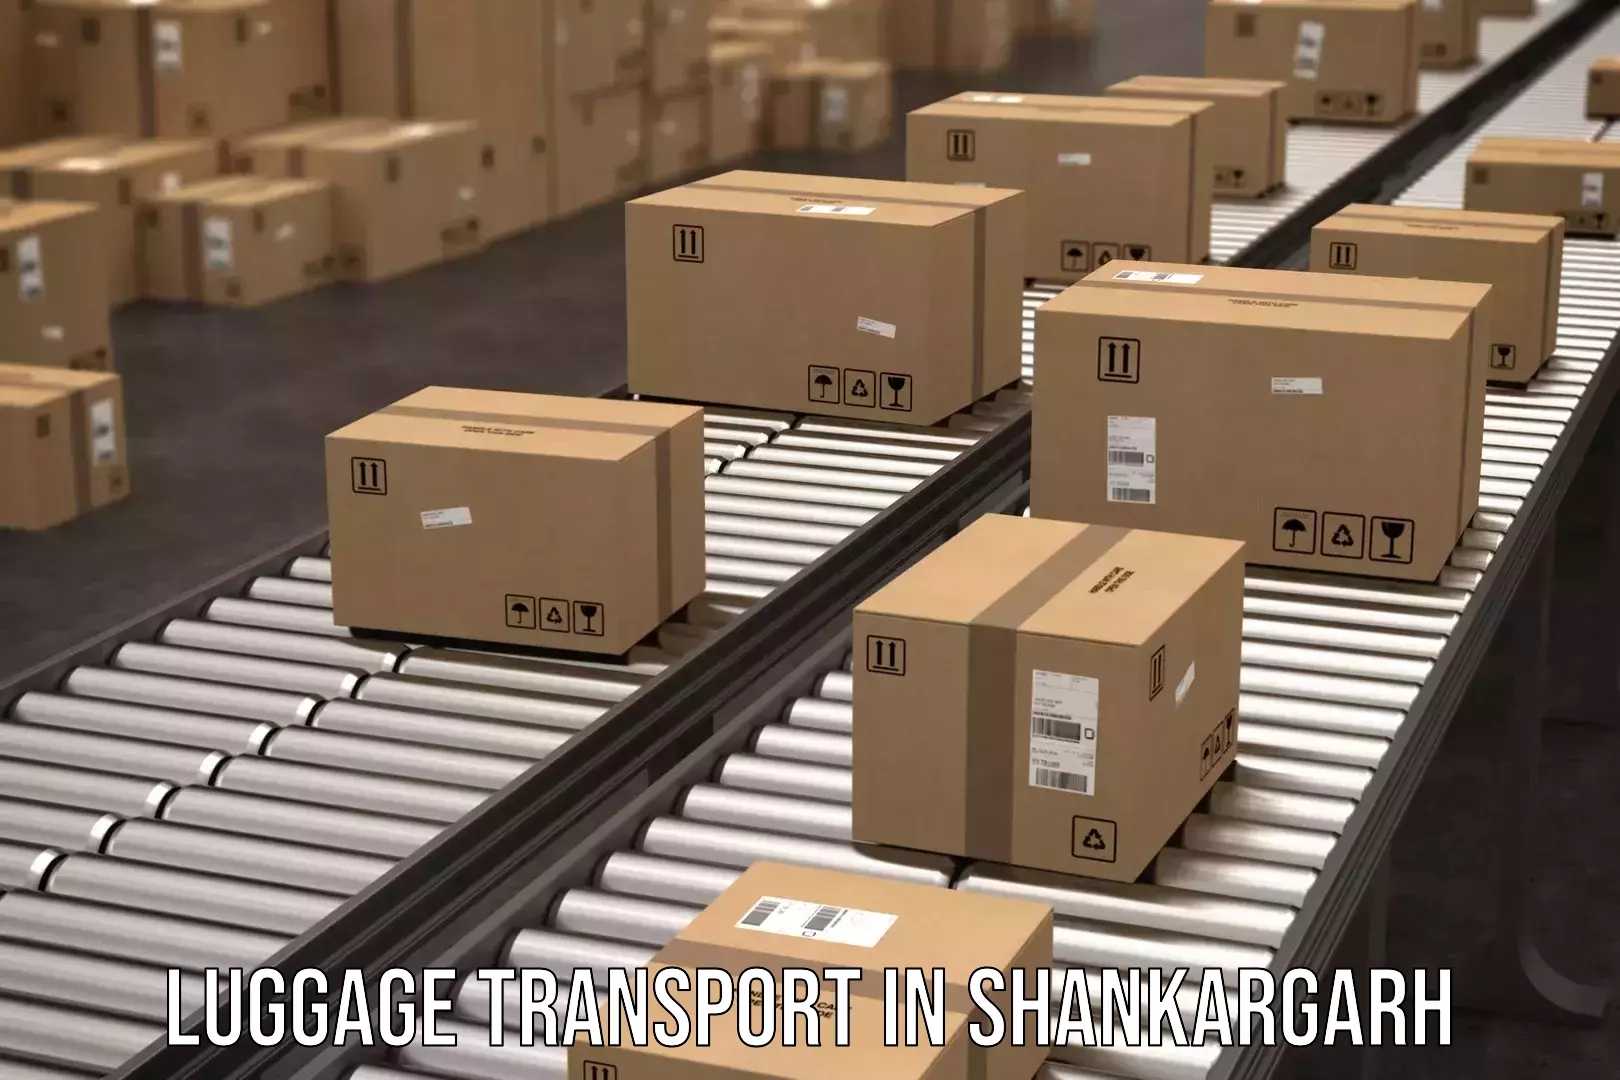 Luggage transport schedule in Shankargarh